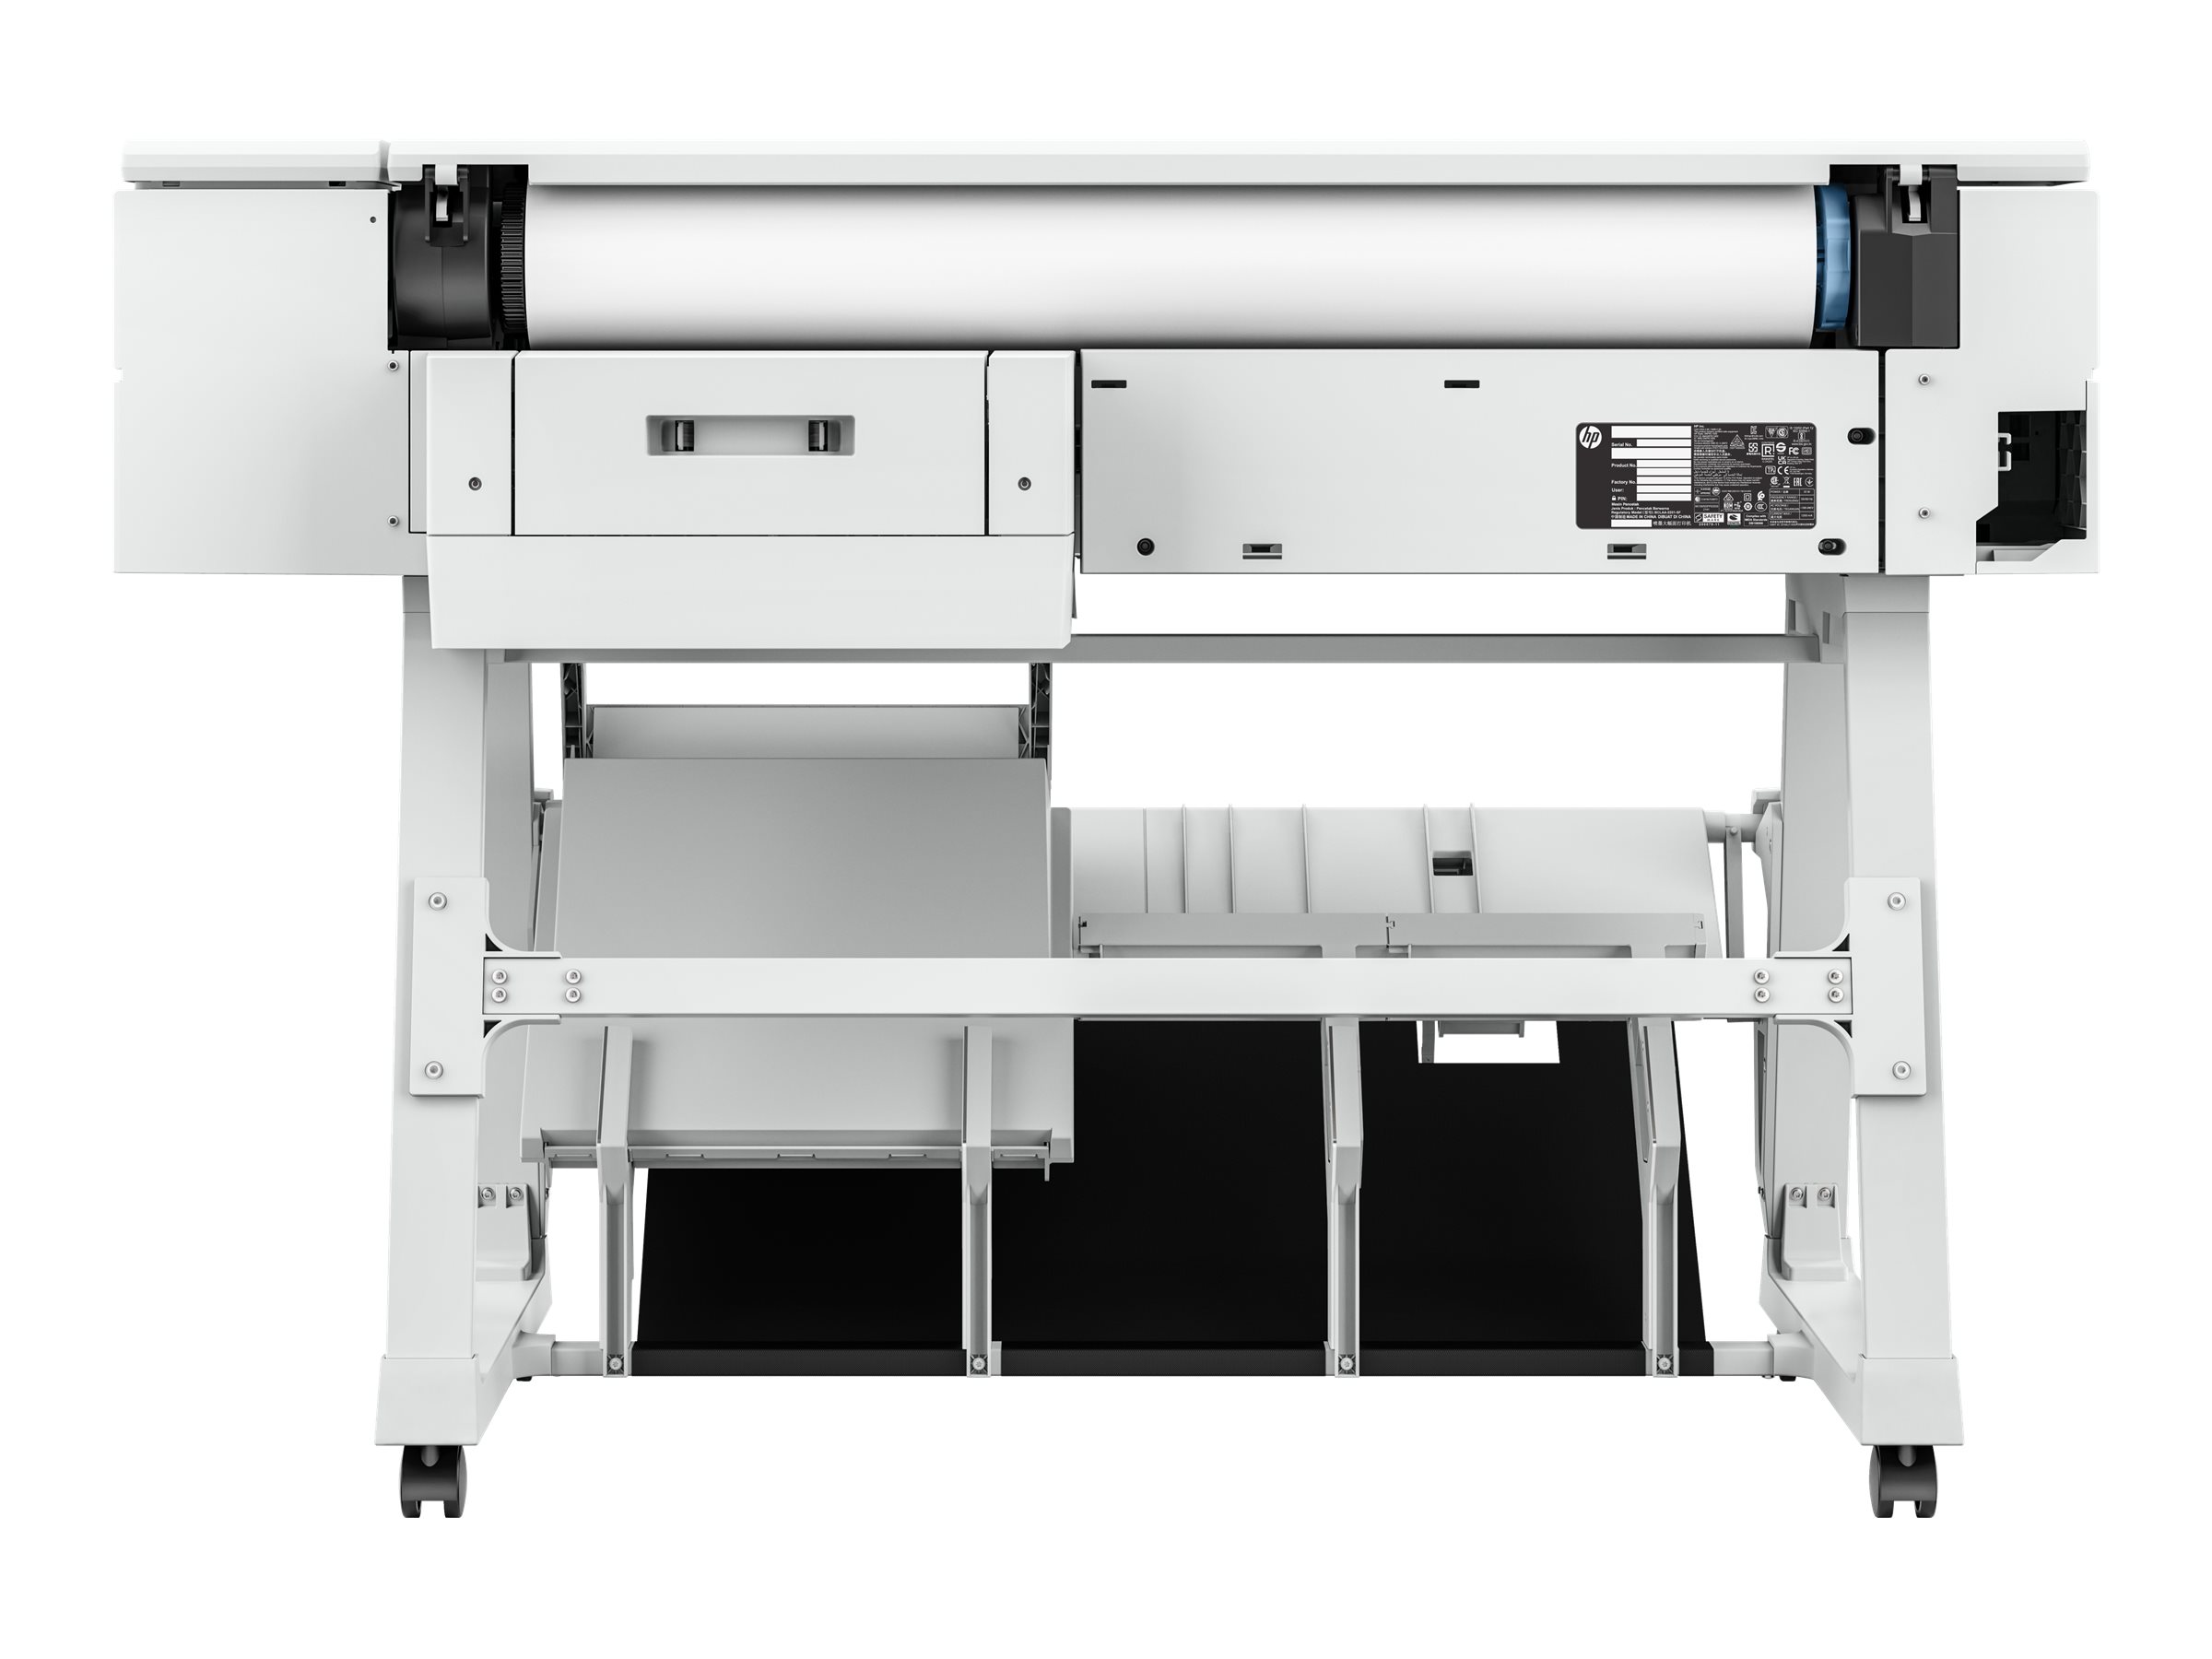 Imprimante à impact - LQ-780 - EPSON Europe - de bureau / compacte